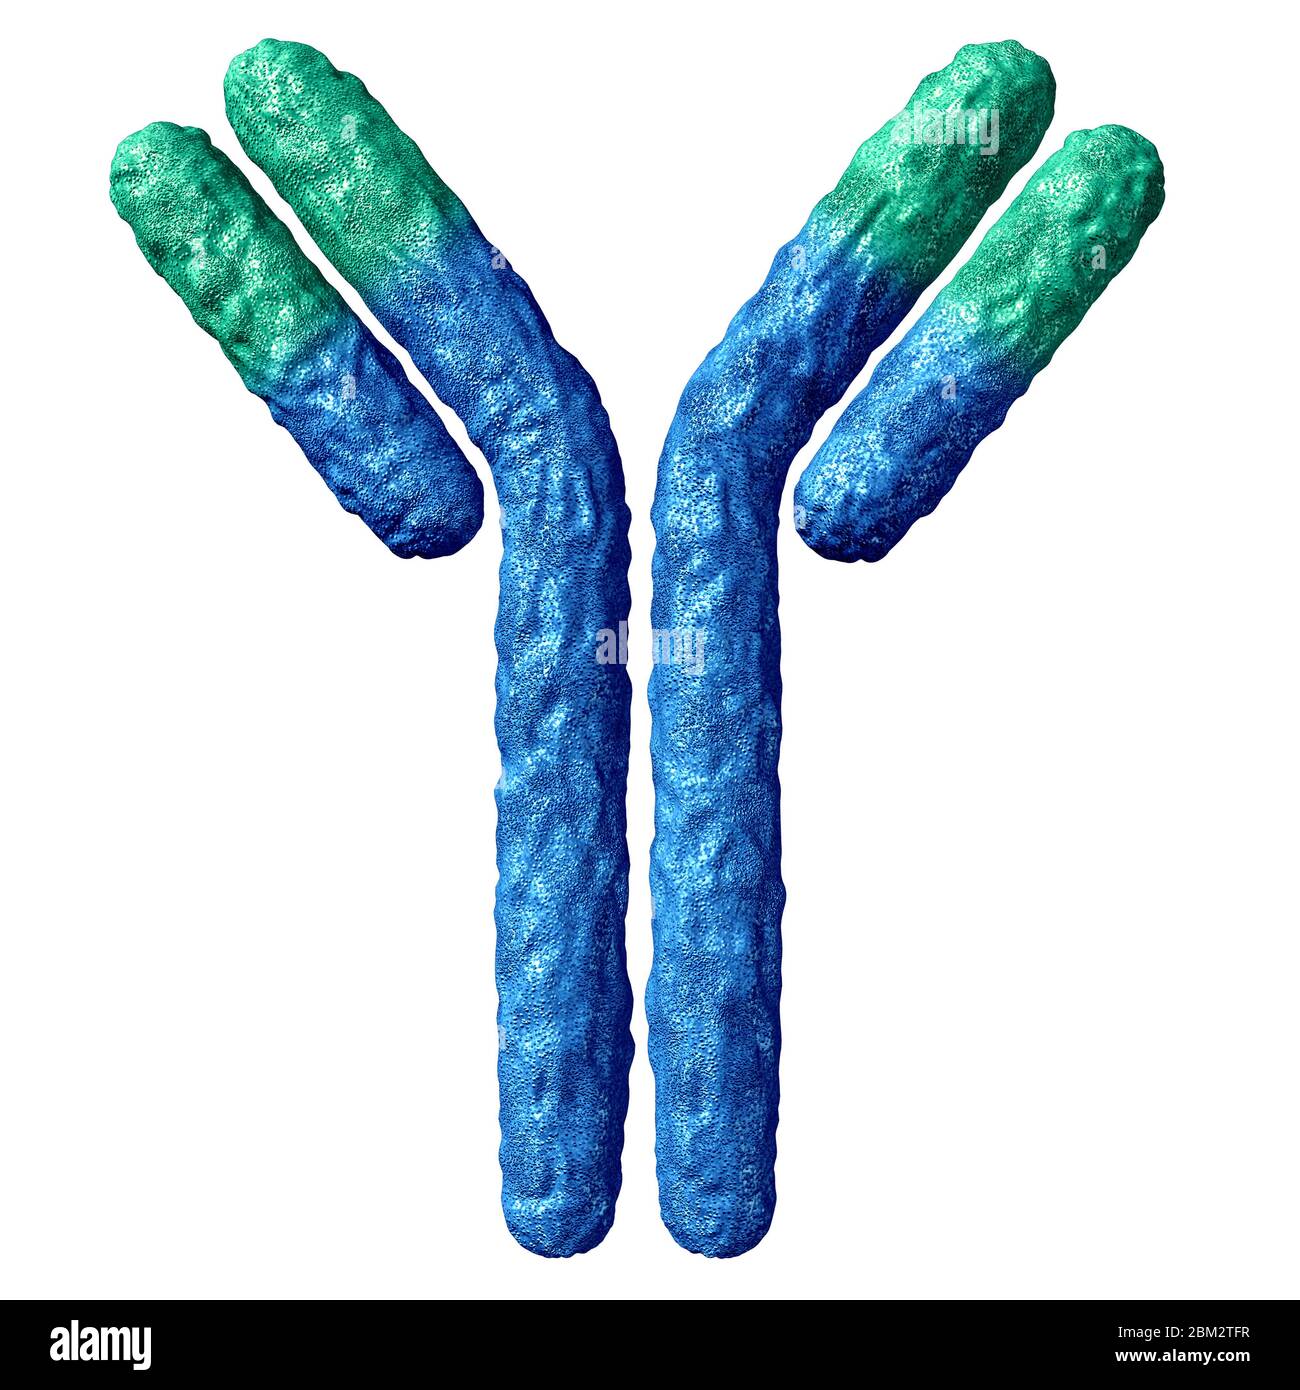 Anatomia anticorpale isolata su sfondo bianco e immunoglobulina con legame disolfuro come proteine a forma di Y parte del sistema immunitario. Foto Stock